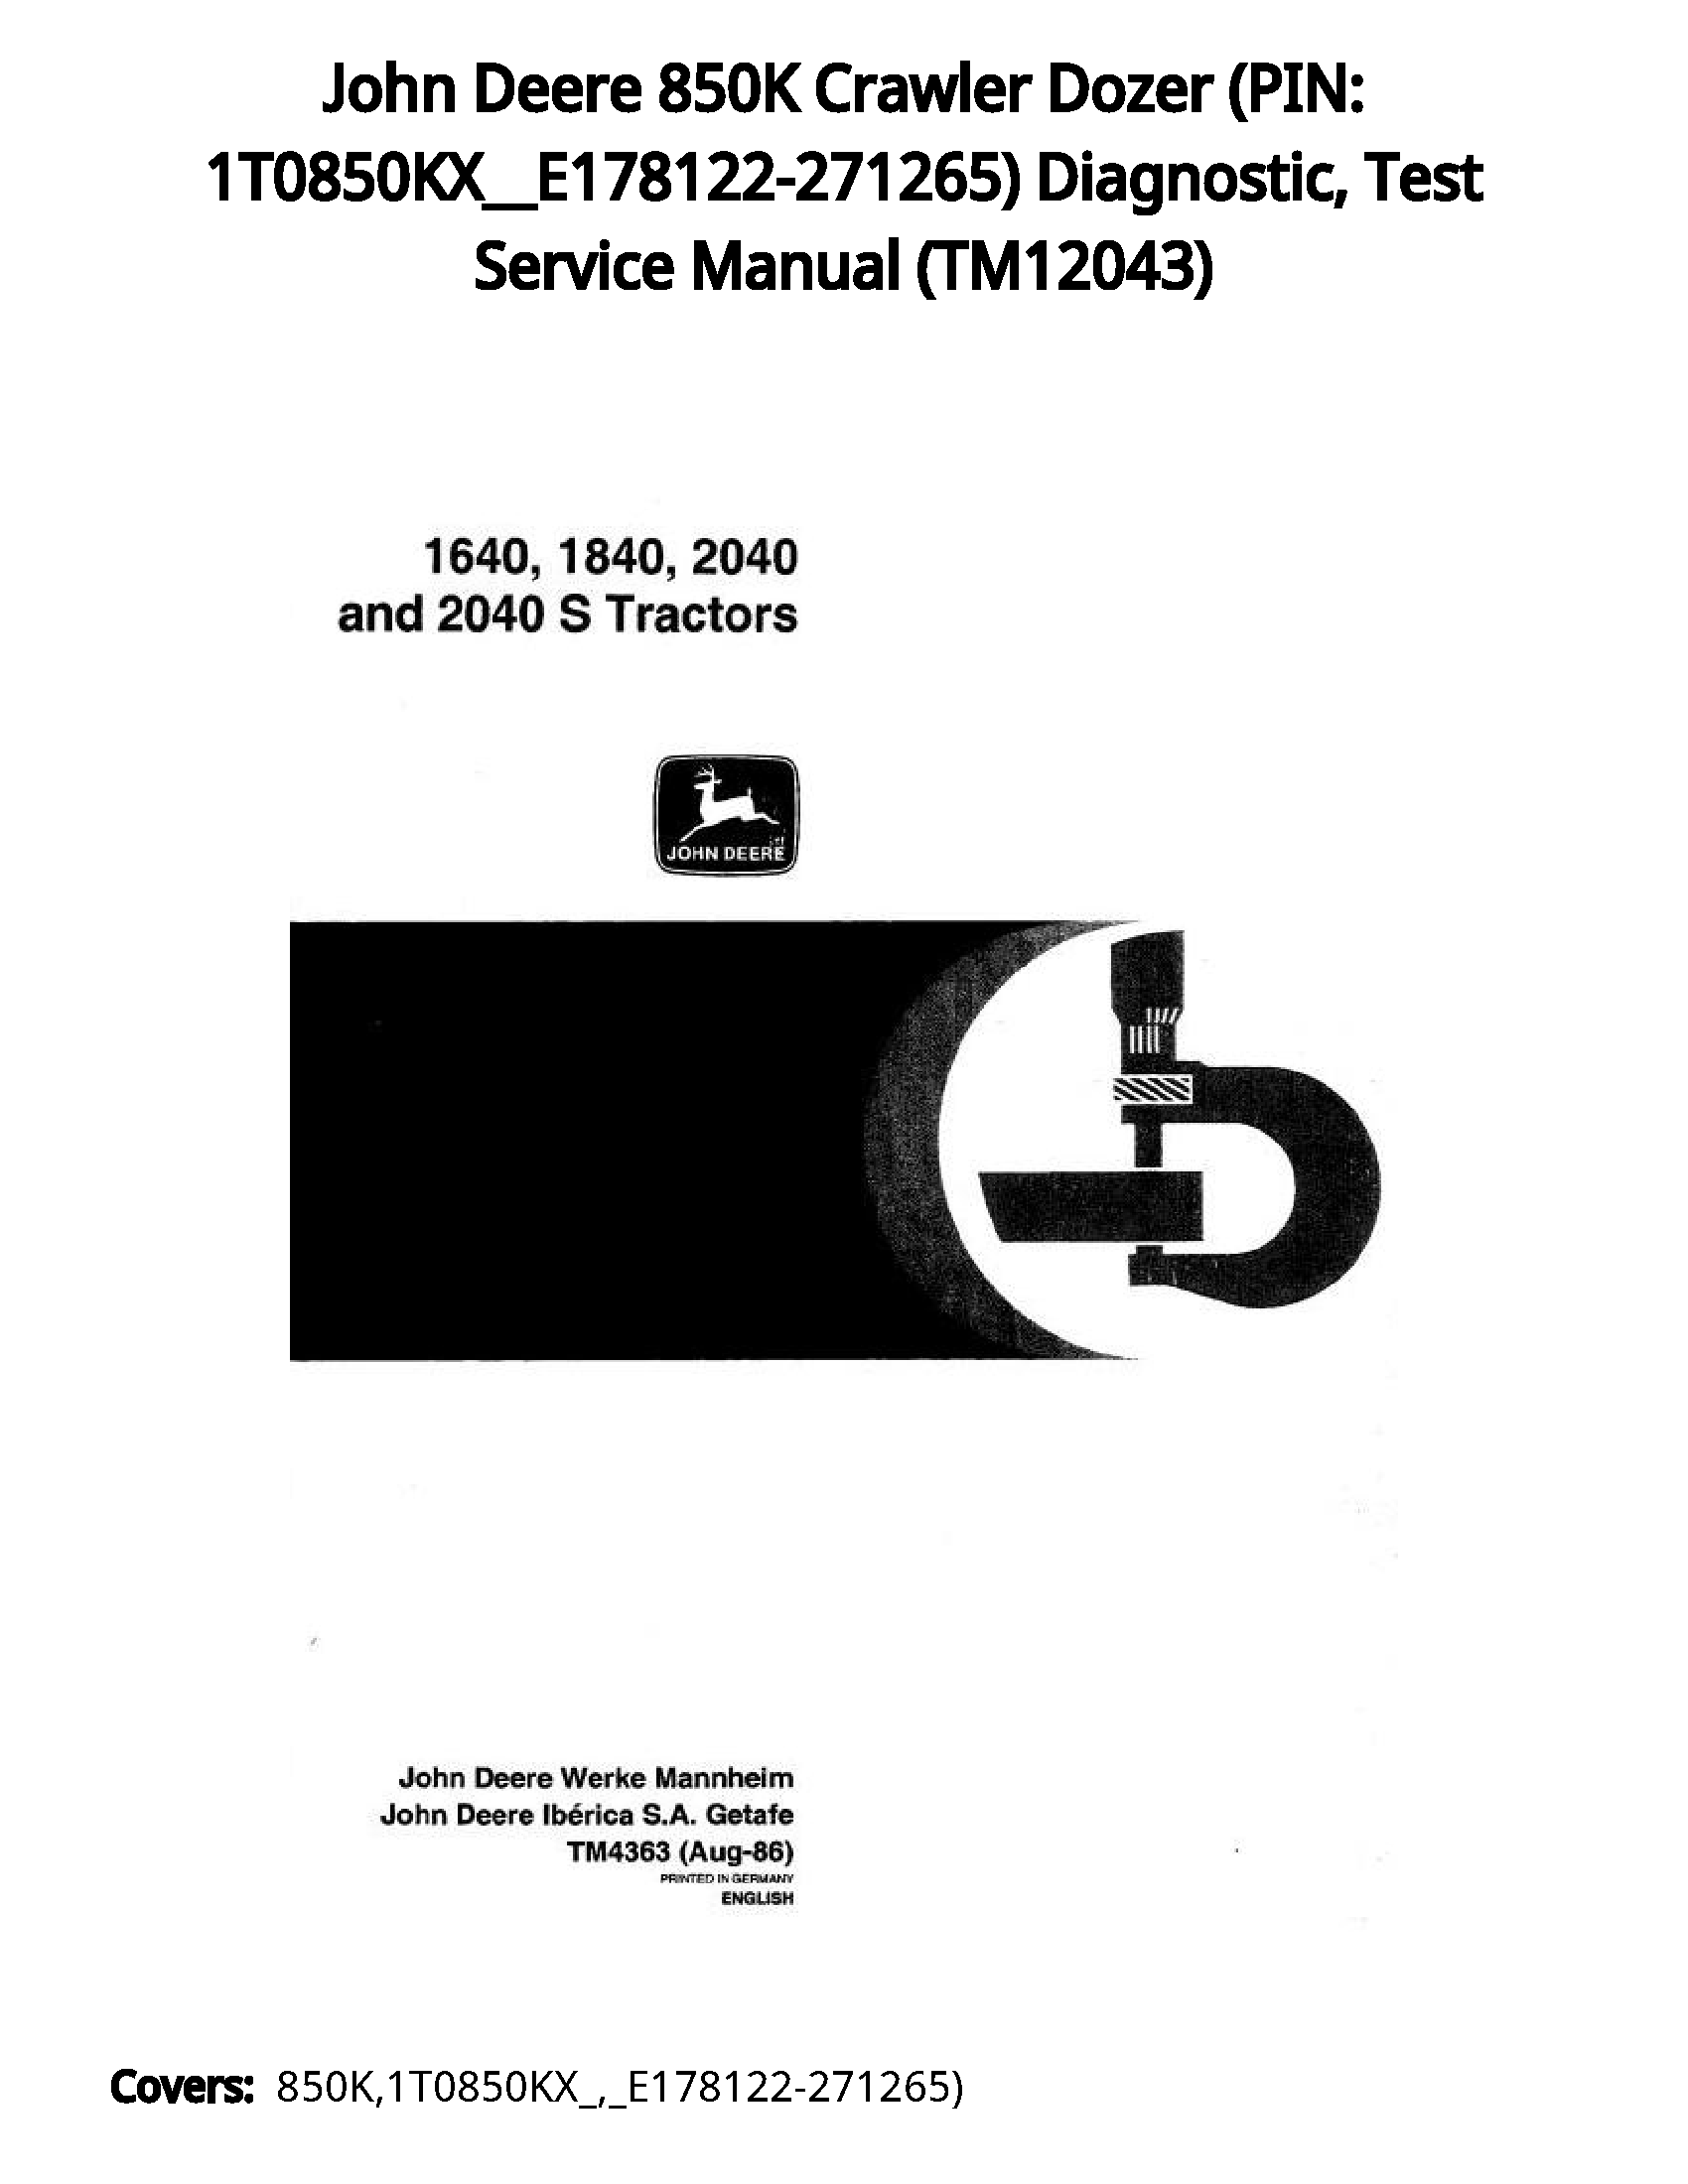 John Deere 850K Crawler Dozer (PIN: 1T0850KX__E178122-271265) Diagnostic  Test Service Manual - TM12043